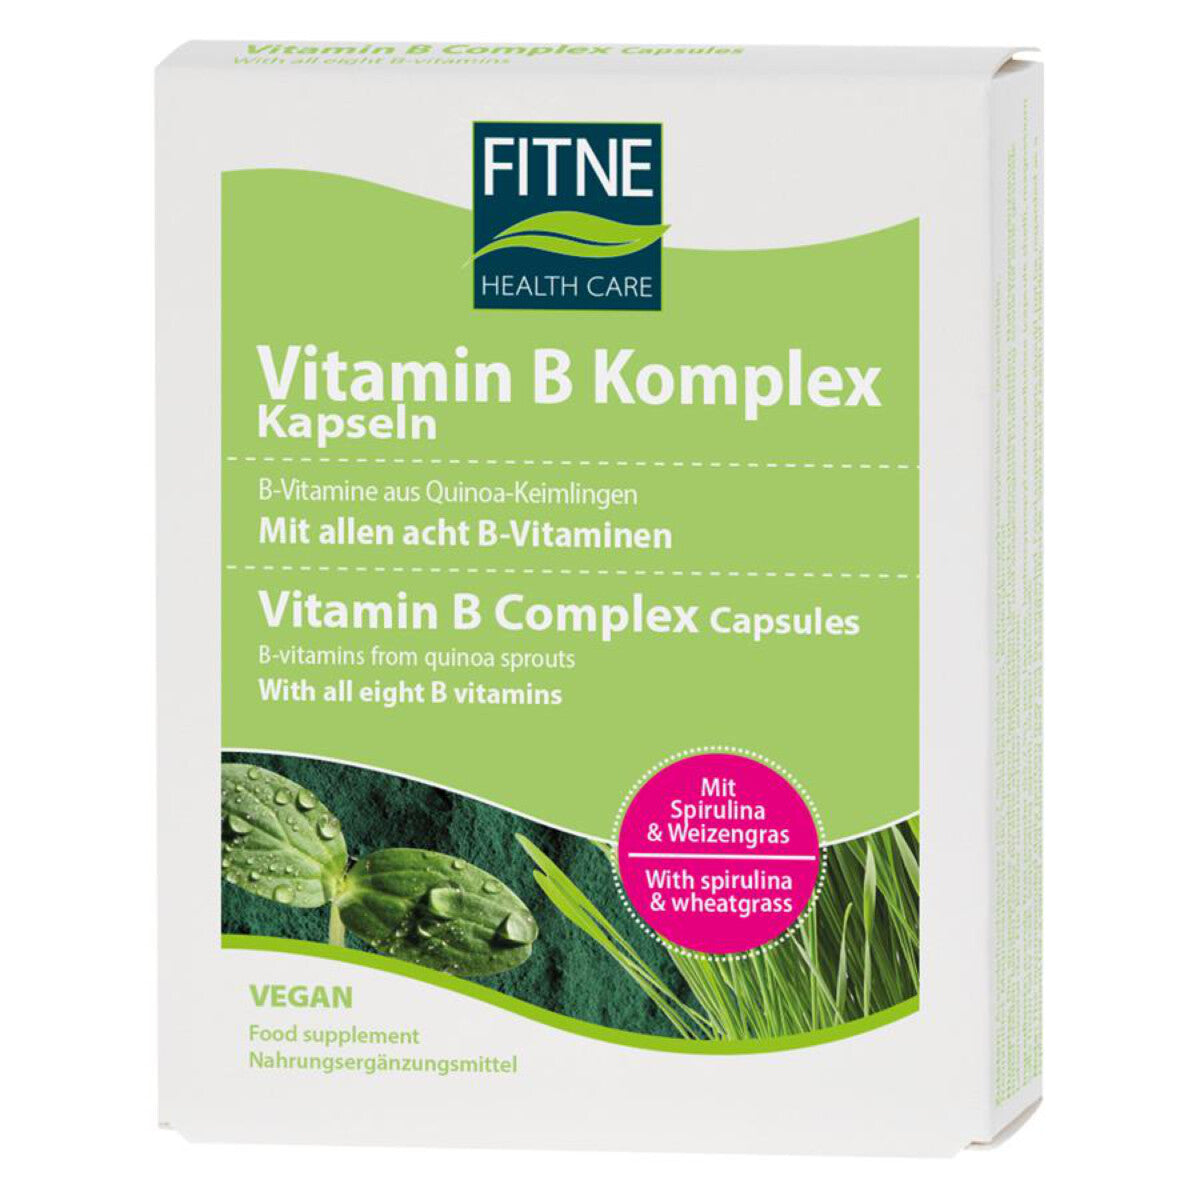 FITNE Vitamin B Komplex Kapseln - 60 Stk.